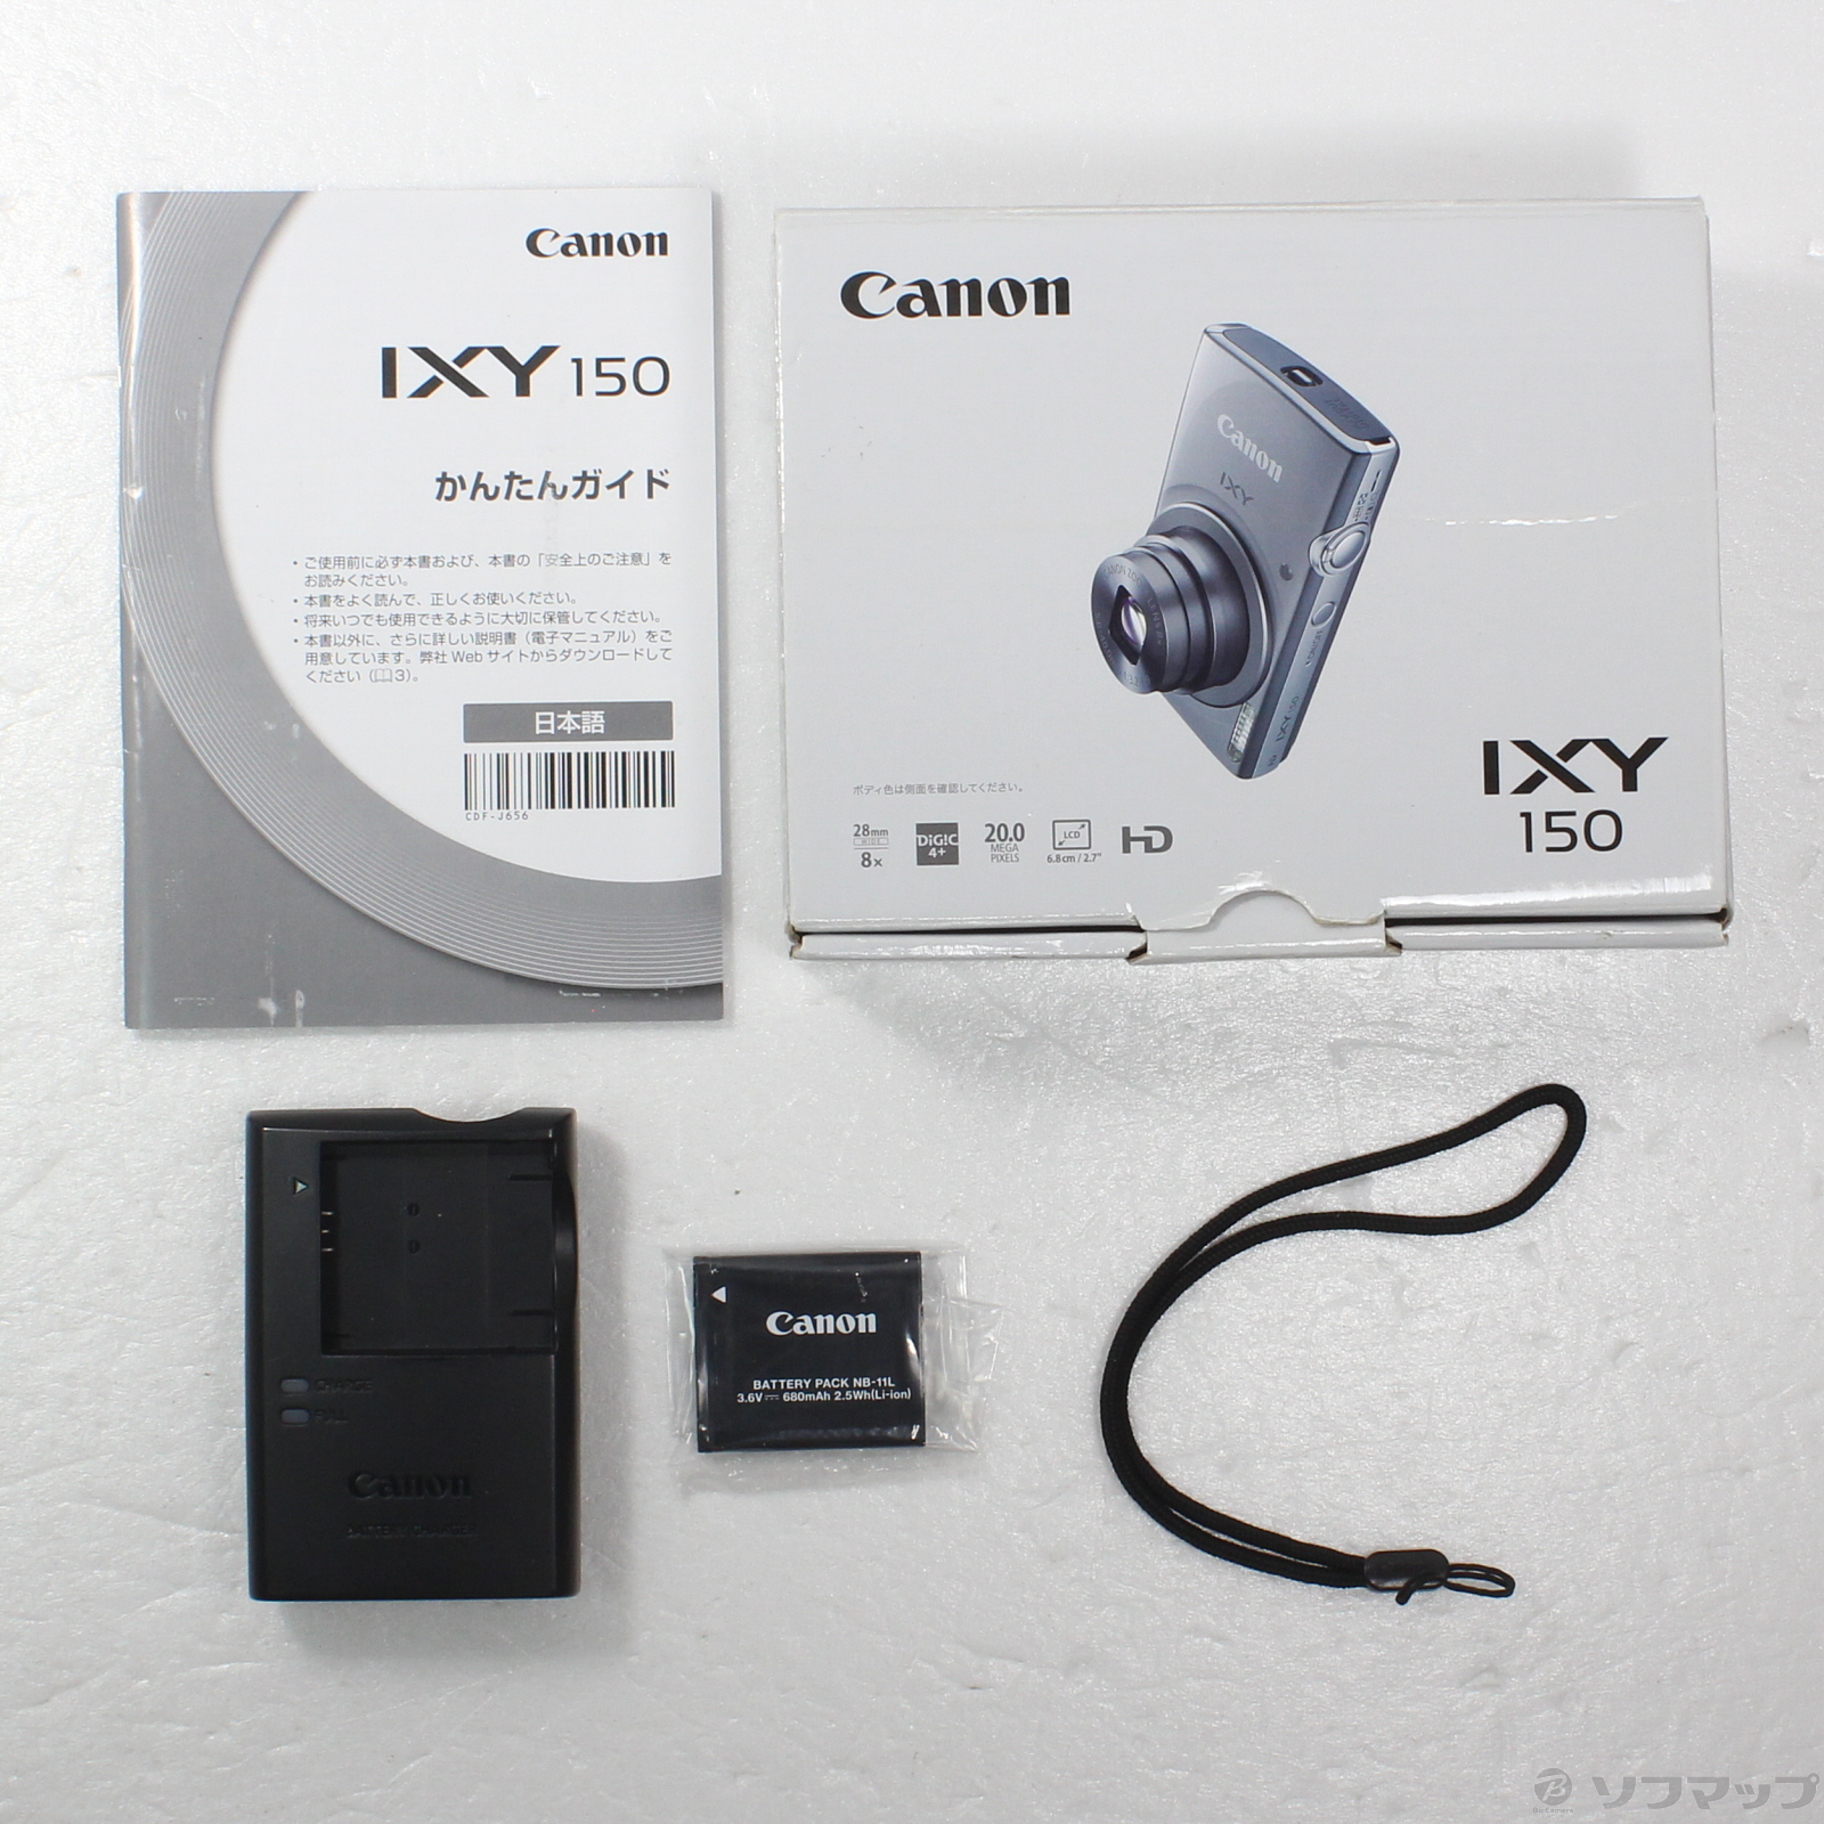 国内正規取扱い店 Canon IXY 150 SL 【ケース付き】 - カメラ